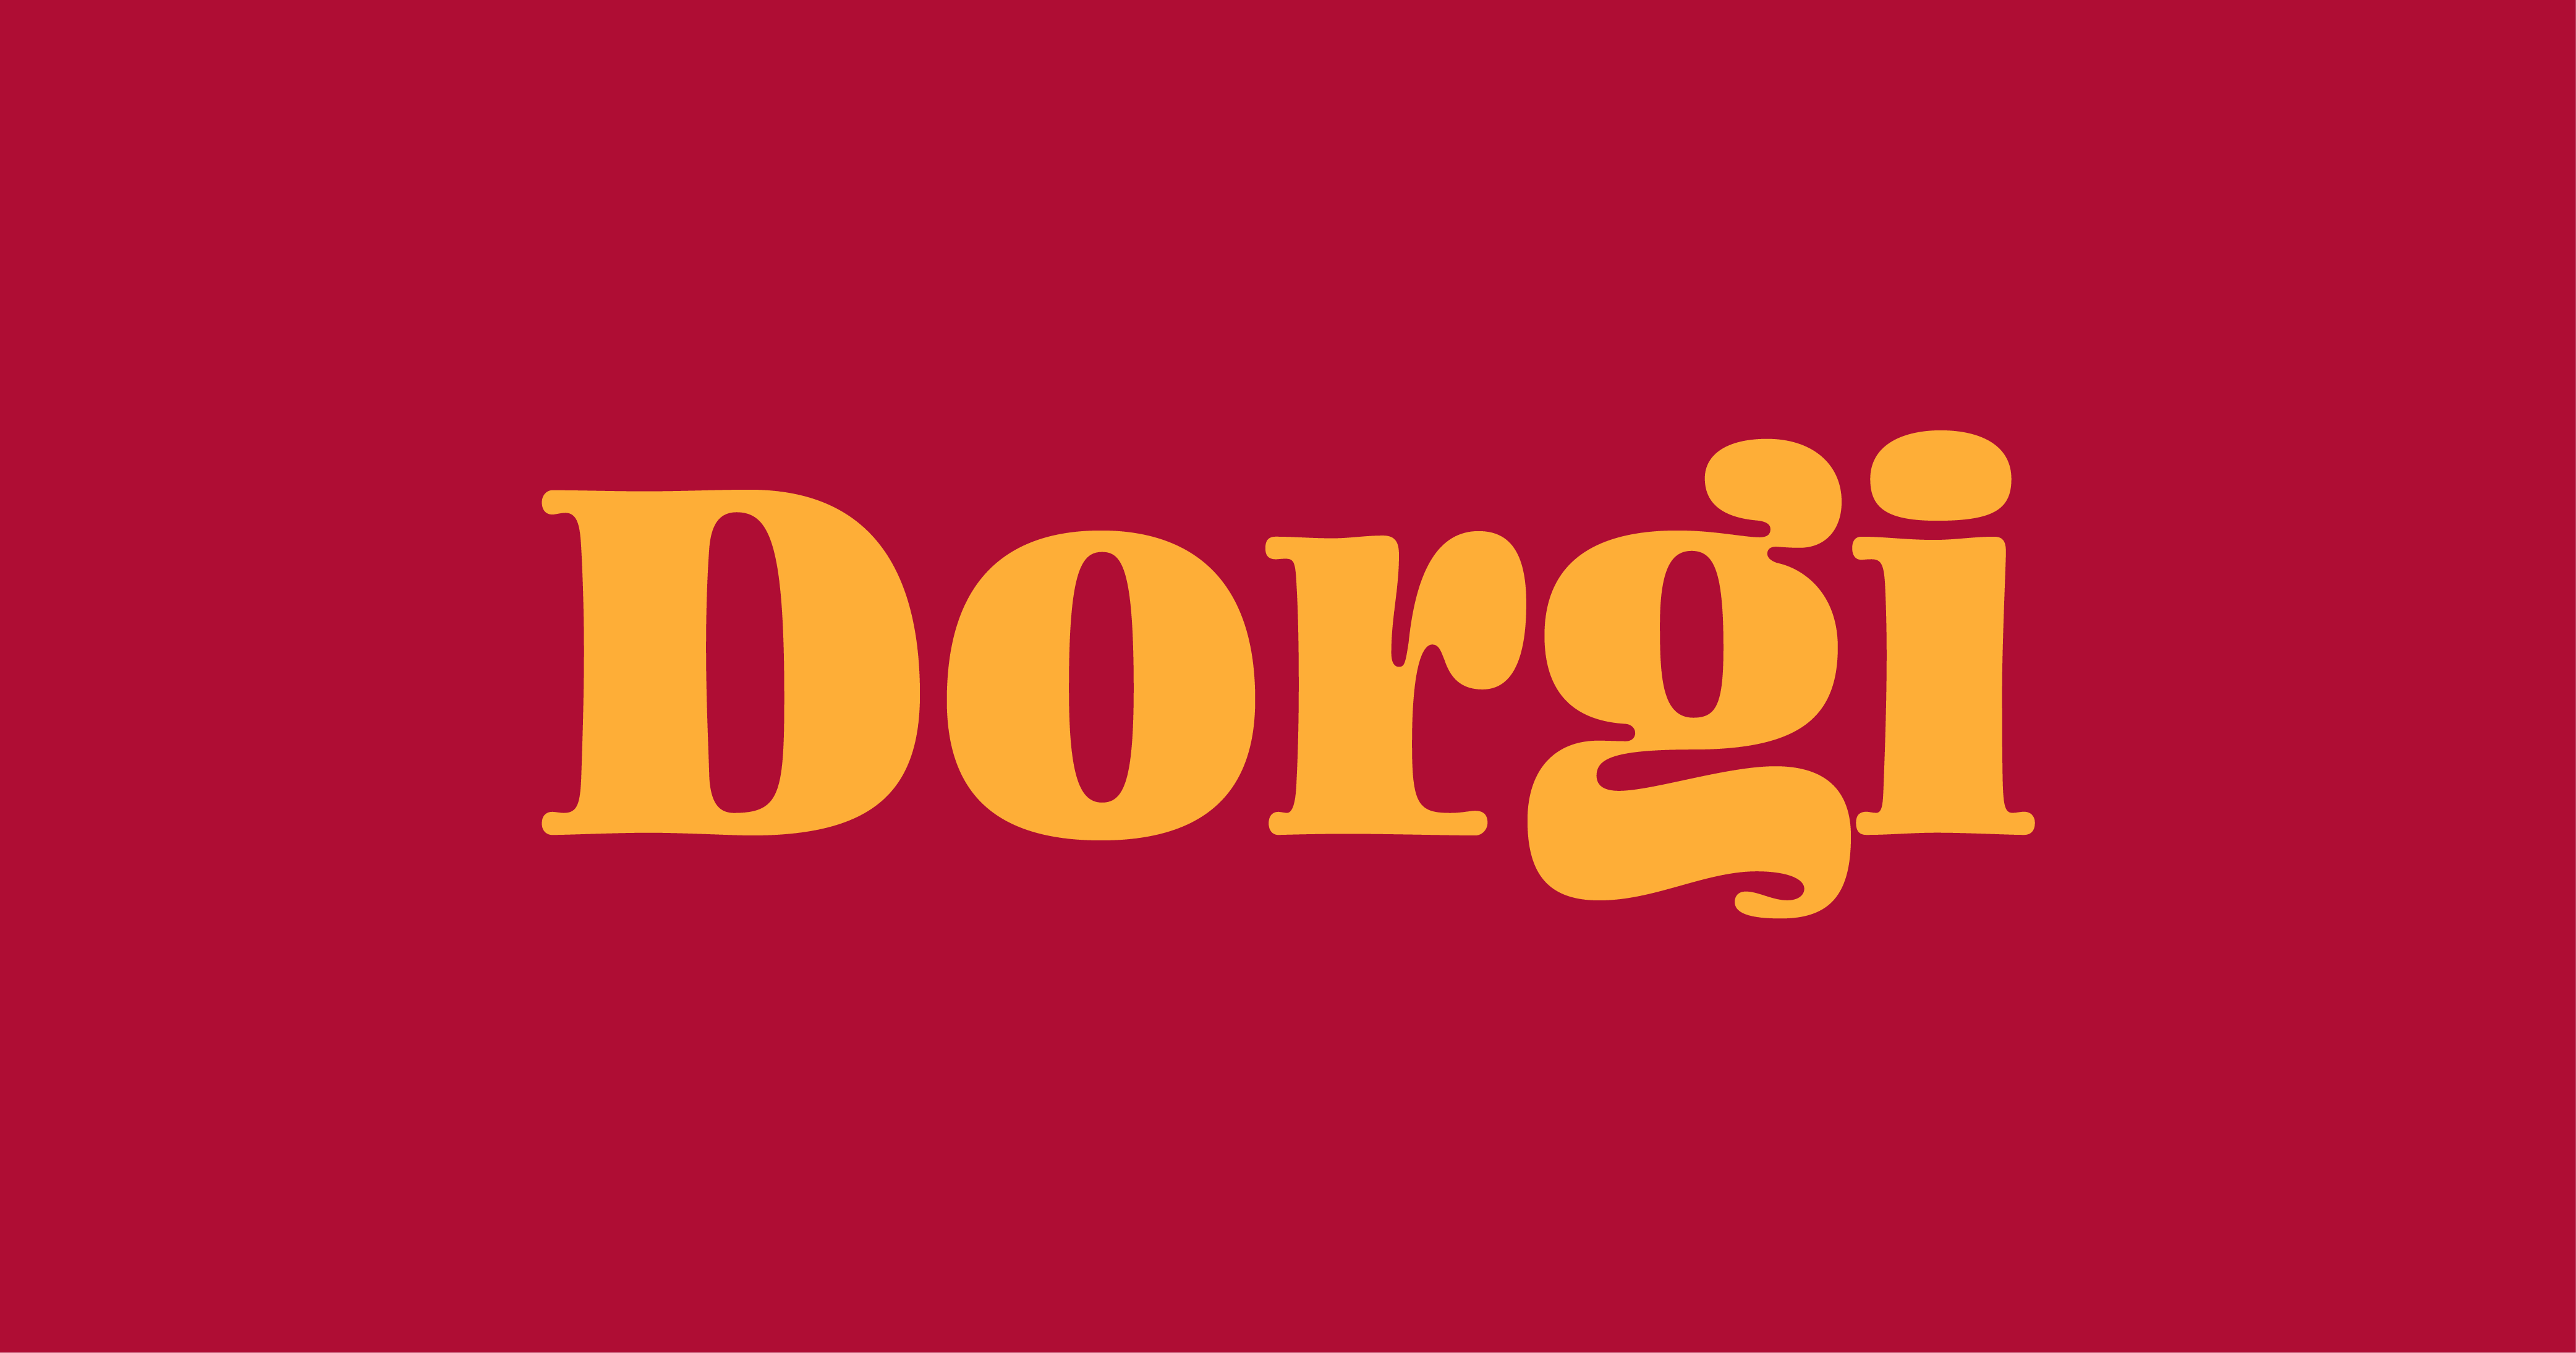 Dorgi